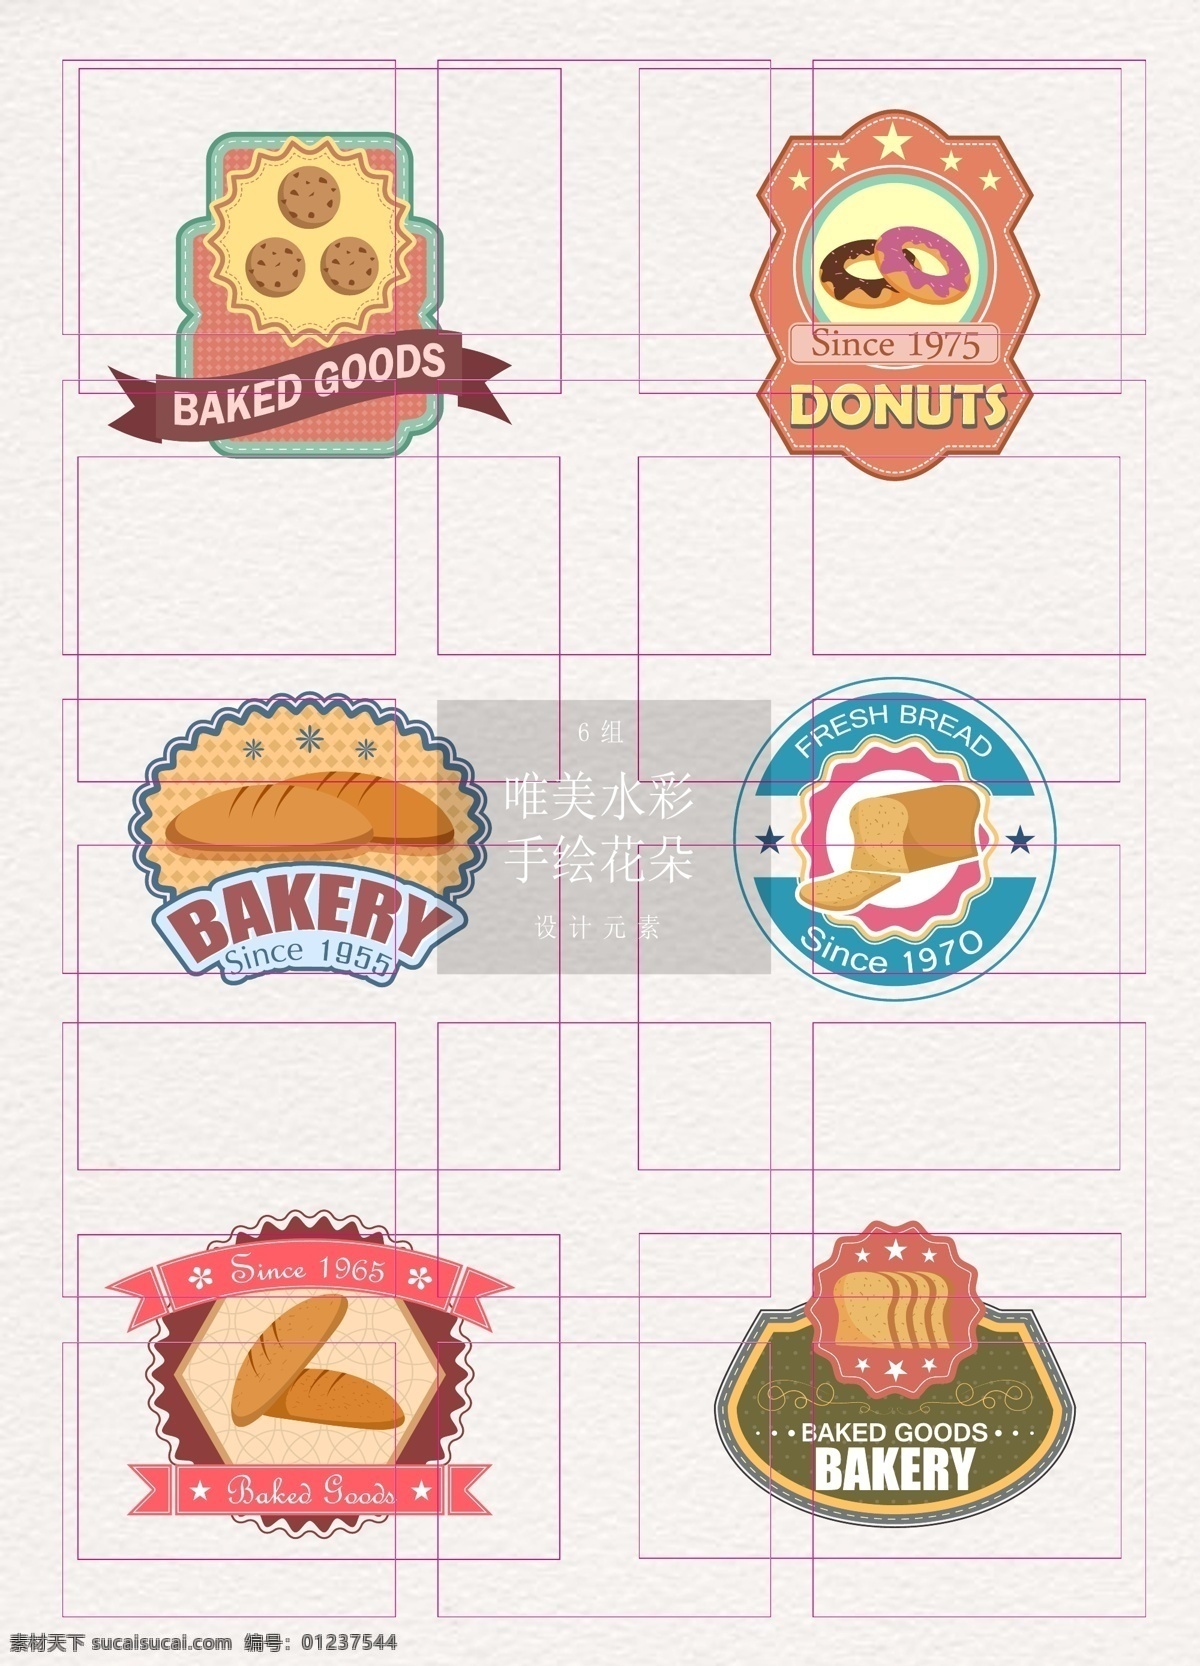 彩色 创意 甜点 标签 标签设计 饼干 面包 矢量 甜点标签 徽章设计 ai元素 吐司 甜甜圈